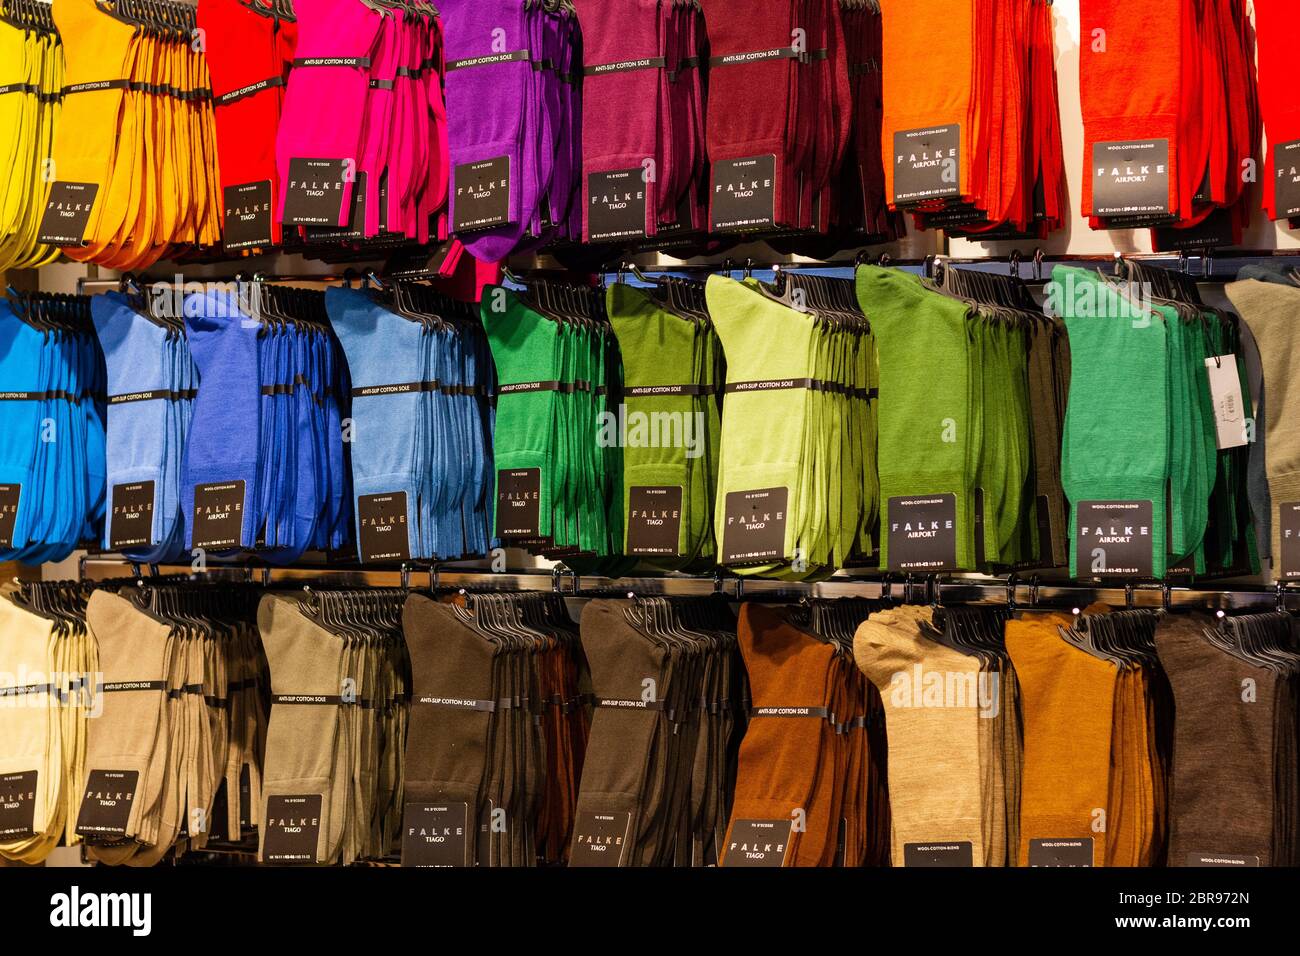 Schwechat, Austria. 2020/02/06. Calzini di vari colori del marchio Falke esposti in un negozio presso l'aeroporto di Vienna. Foto Stock